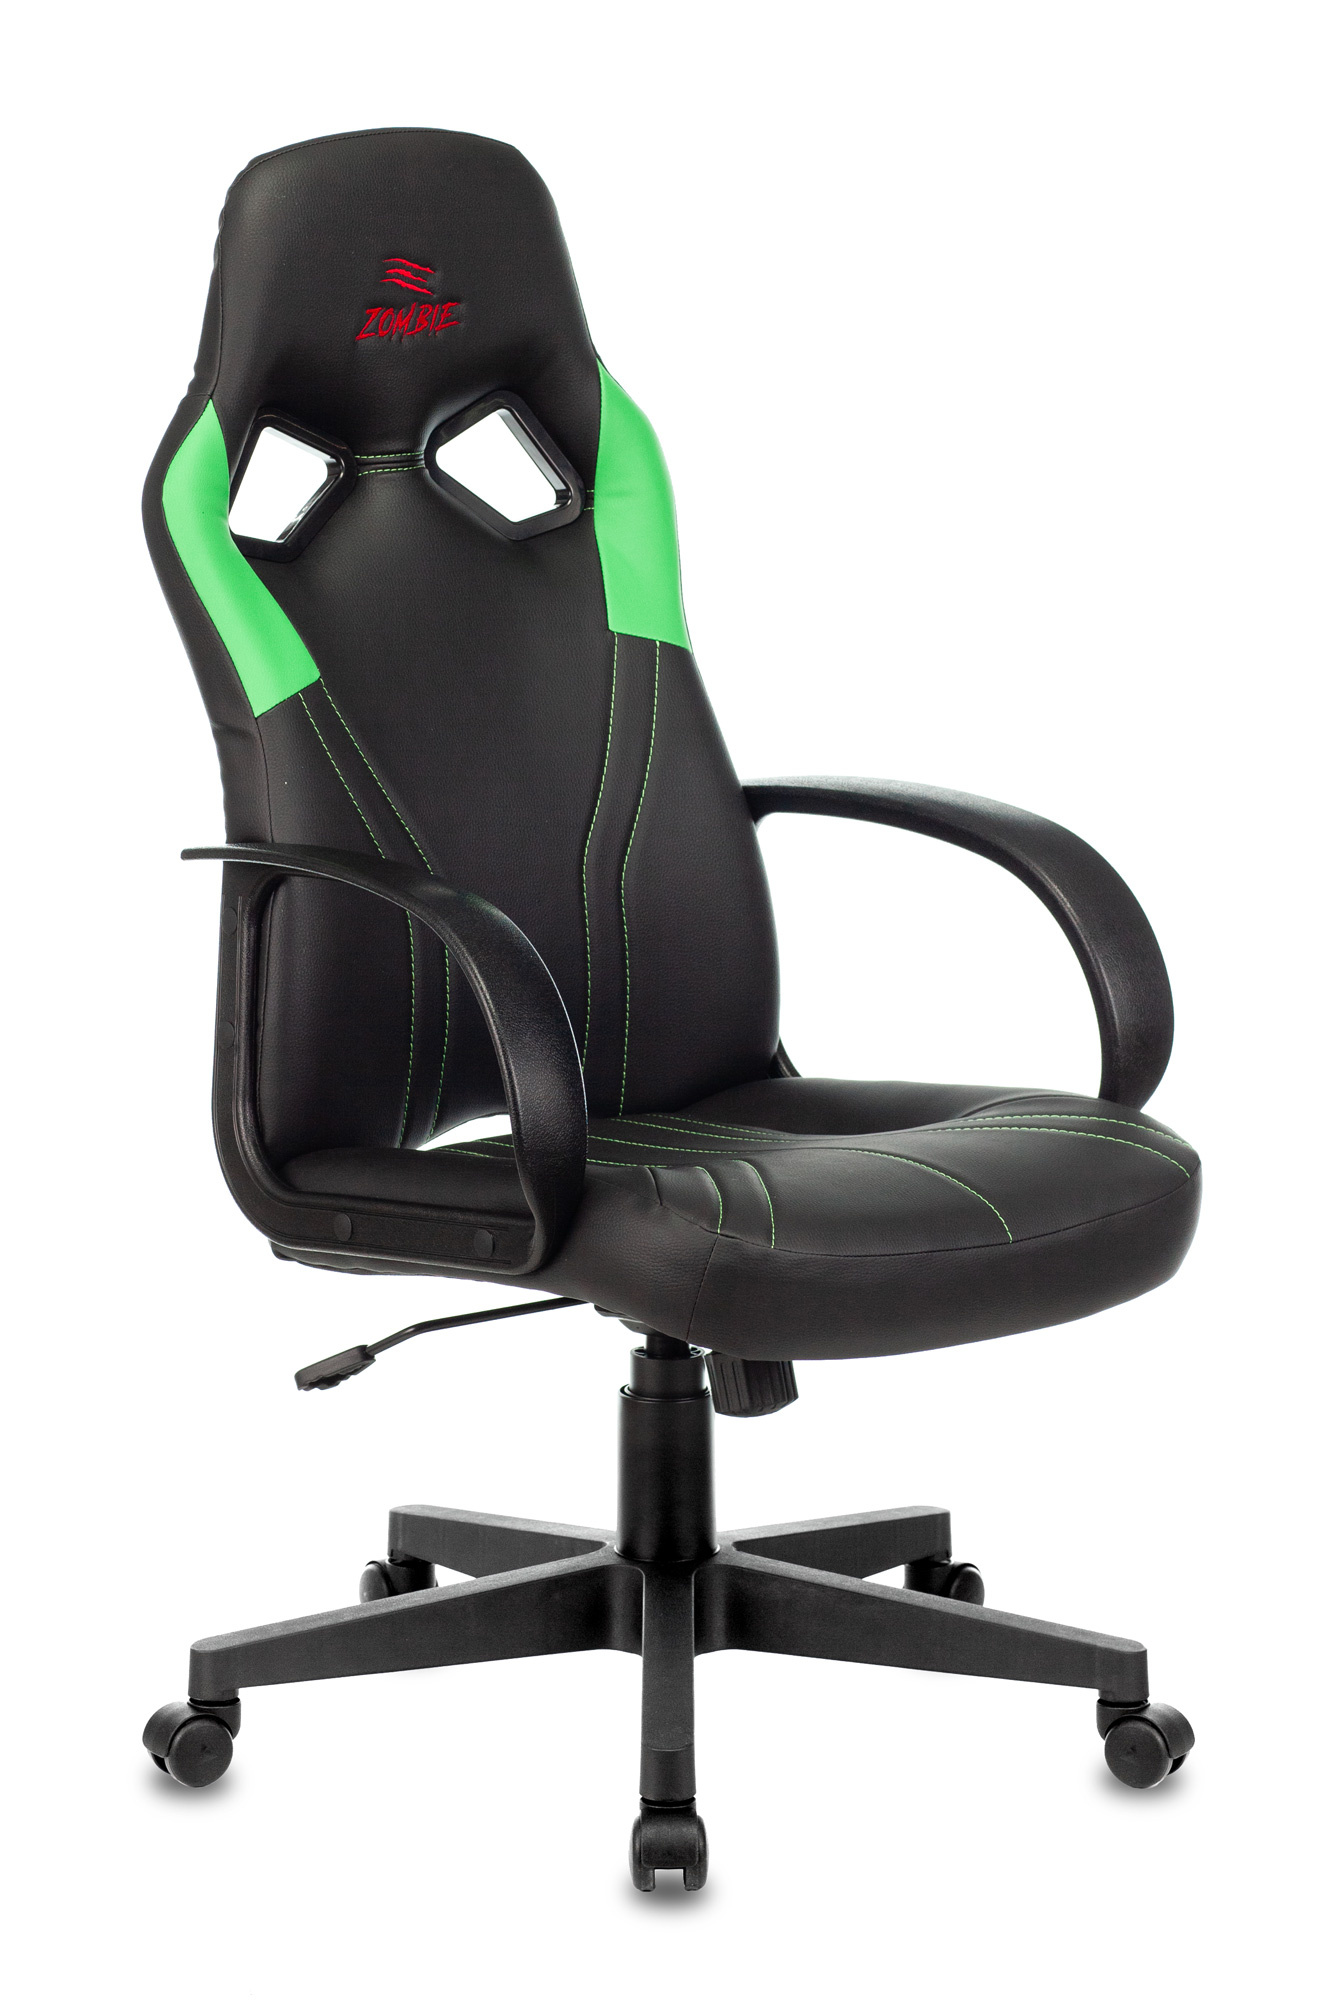 Игровые кресла Кресло игровое Бюрократ ZOMBIE RUNNER черный/зеленый (ZOMBIE RUNNER GREEN)